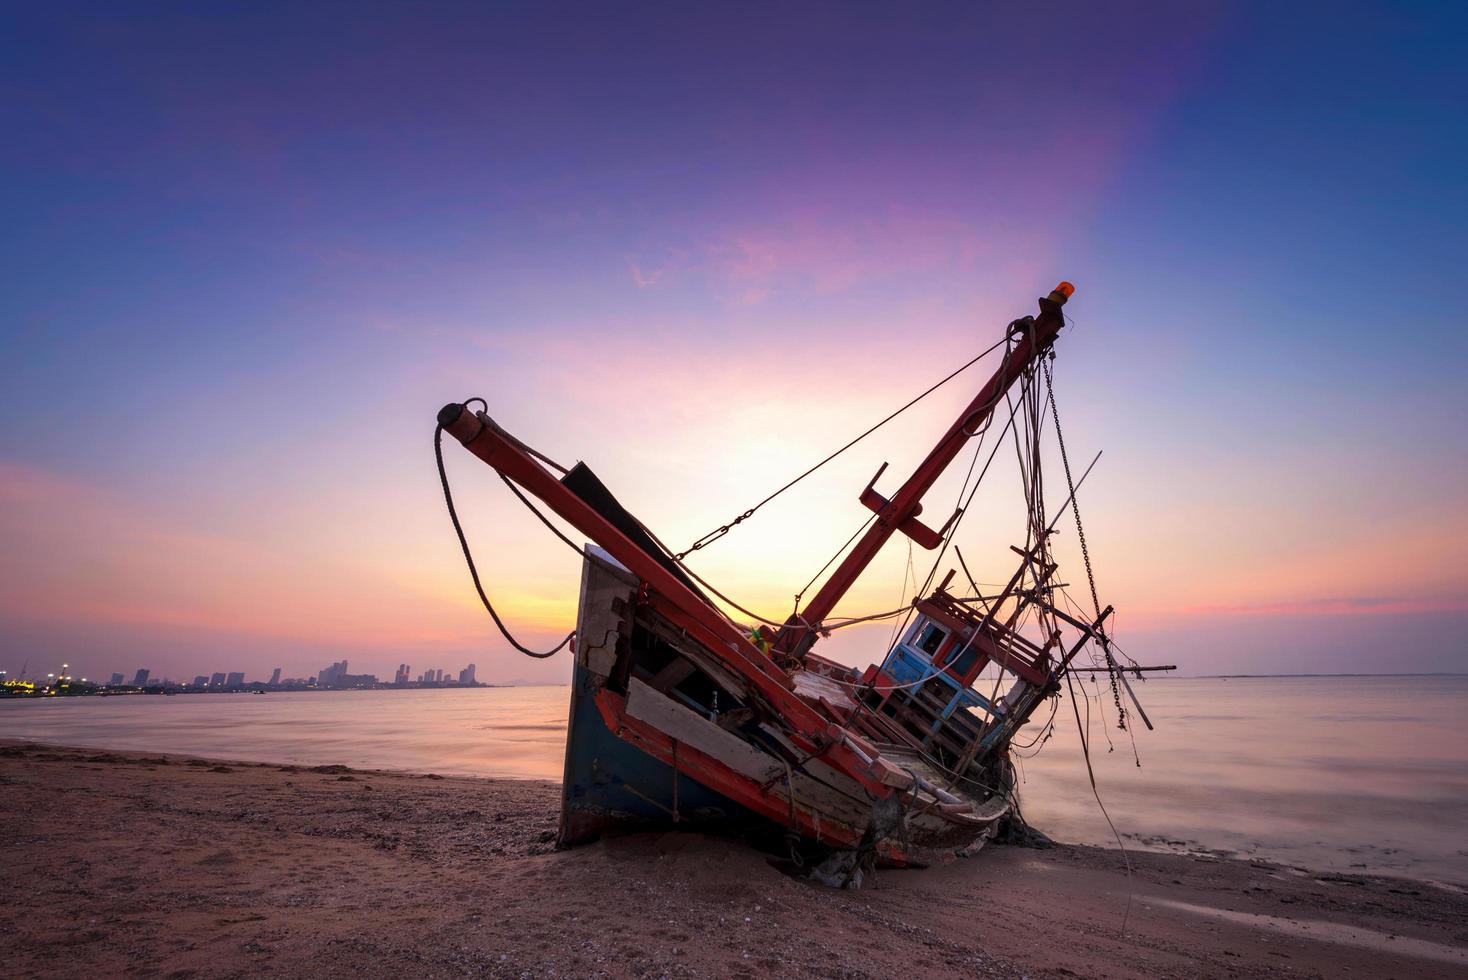 naufrage abandonné de bateau de pêche en bois sur la plage au crépuscule photo